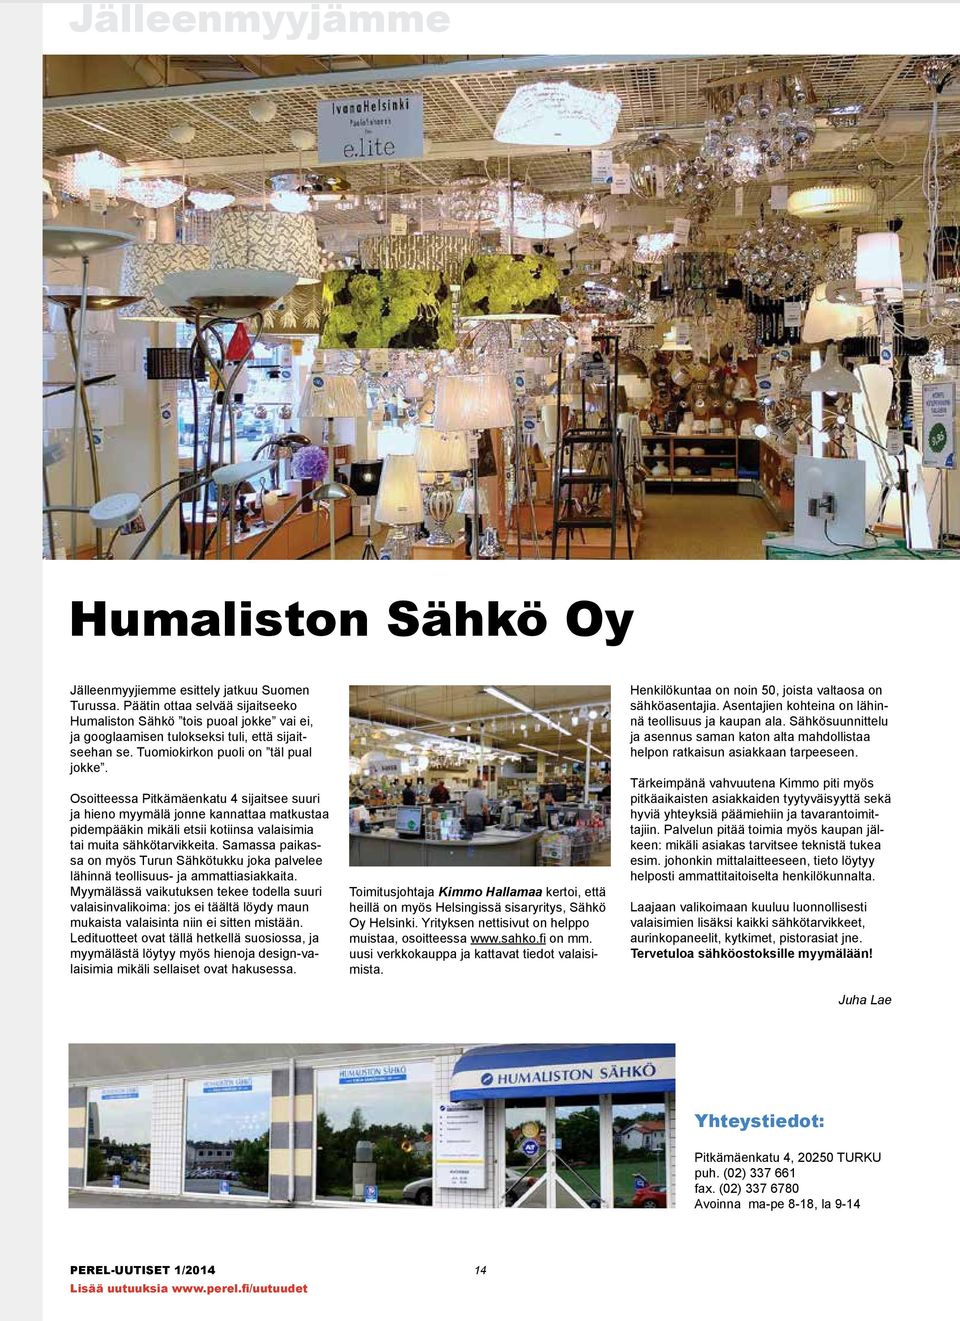 Osoitteessa Pitkämäenkatu 4 sijaitsee suuri ja hieno myymälä jonne kannattaa matkustaa pidempääkin mikäli etsii kotiinsa valaisimia tai muita sähkötarvikkeita.